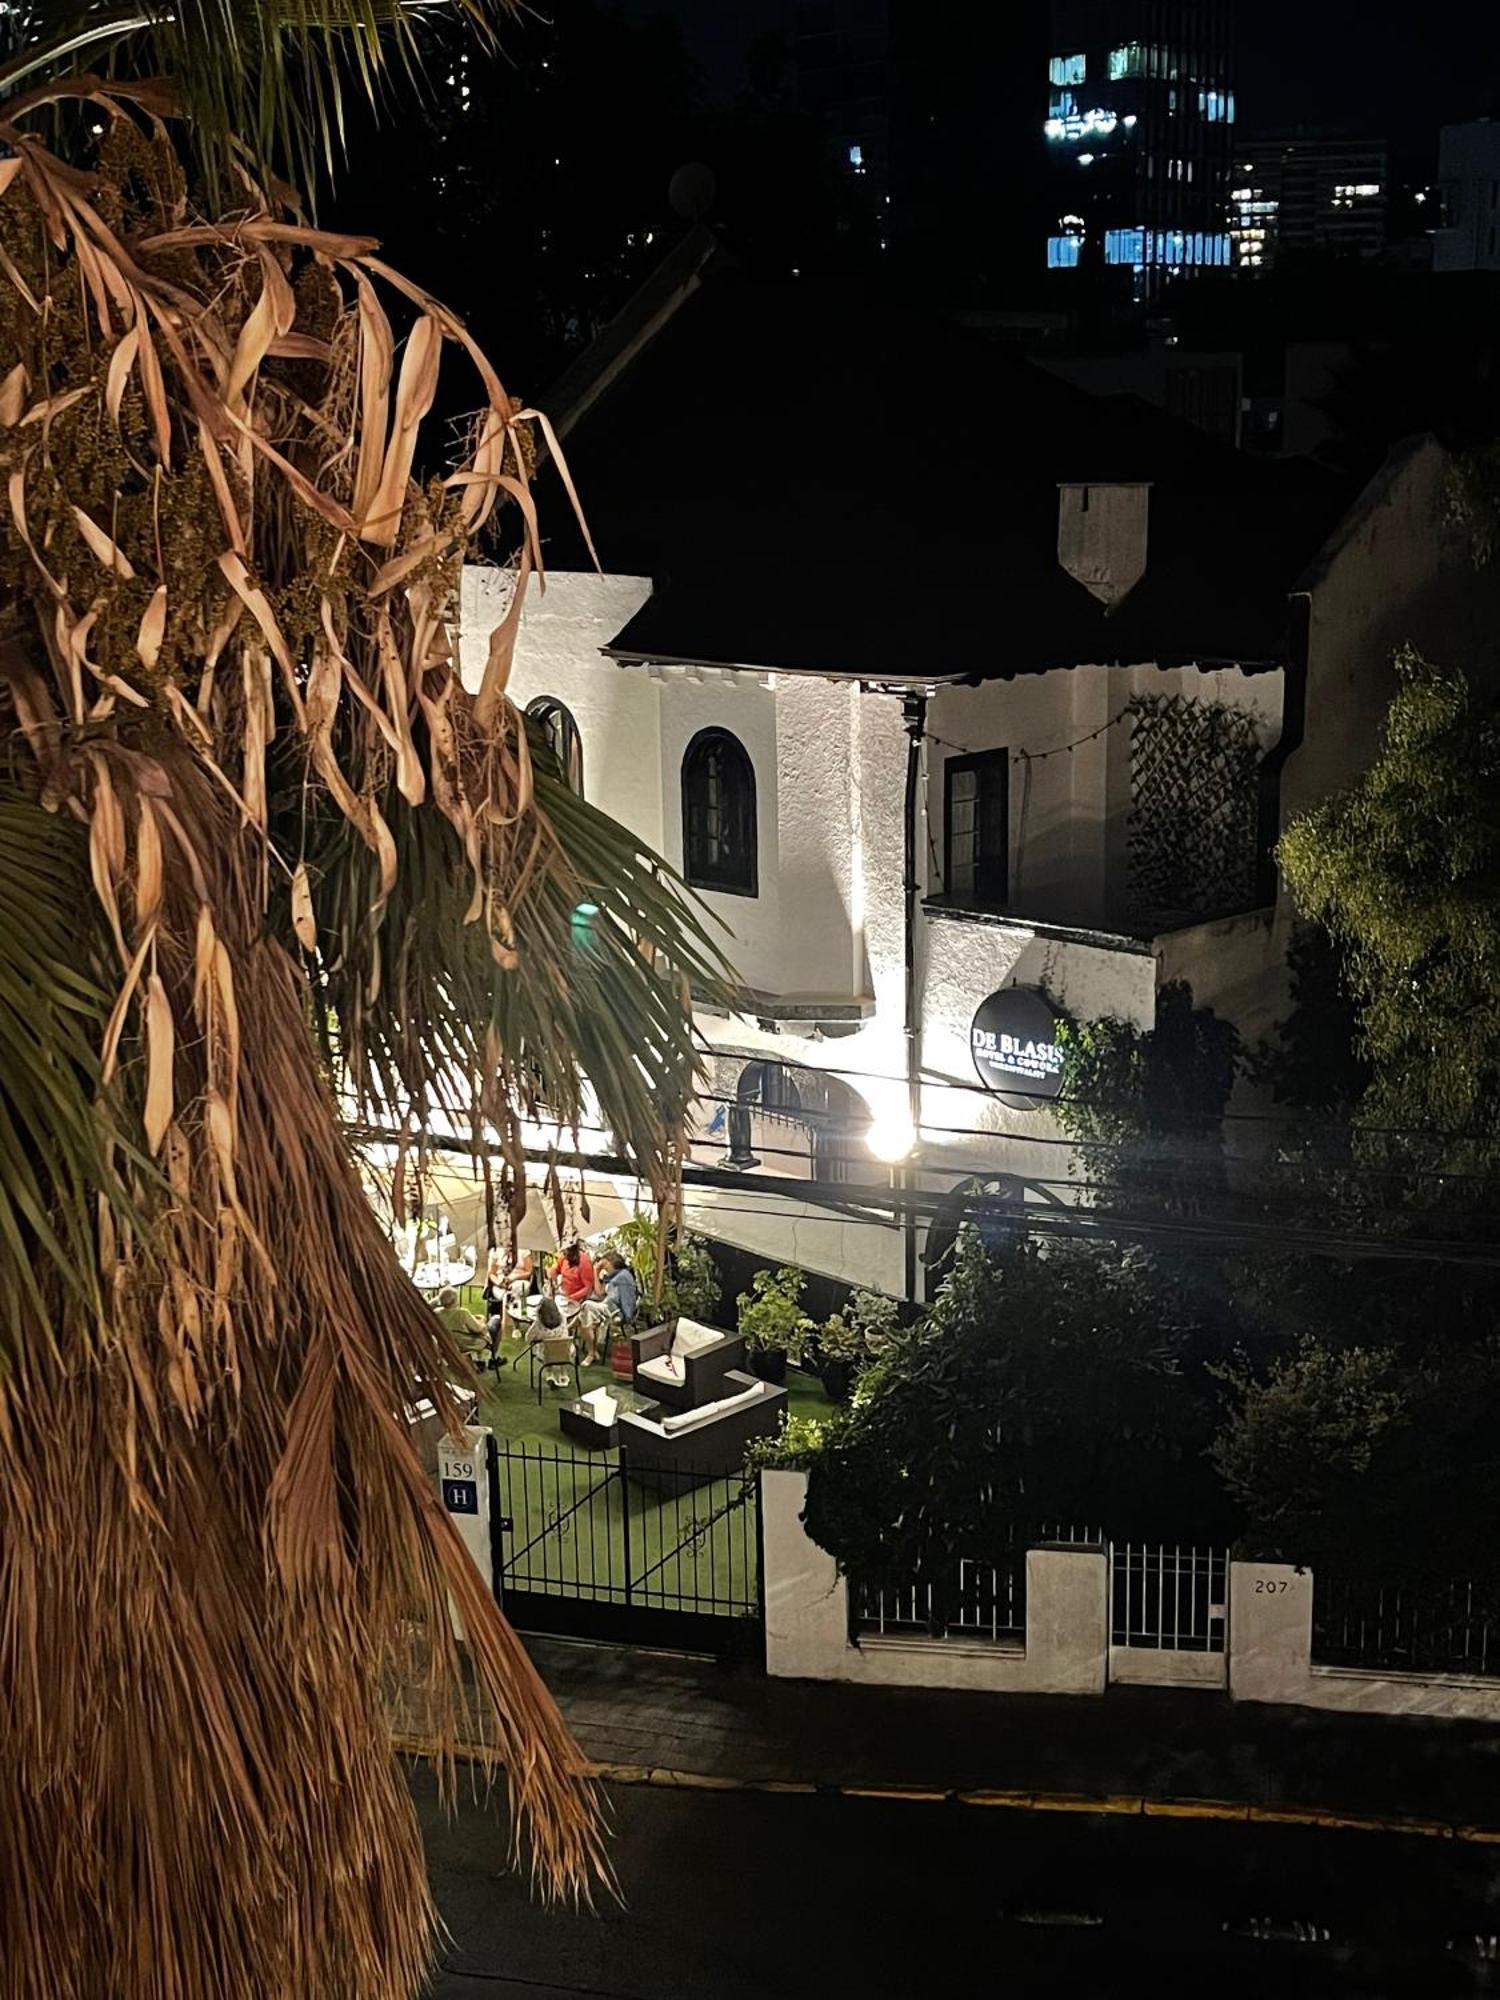 Hotel De Blasis サンティアゴ エクステリア 写真